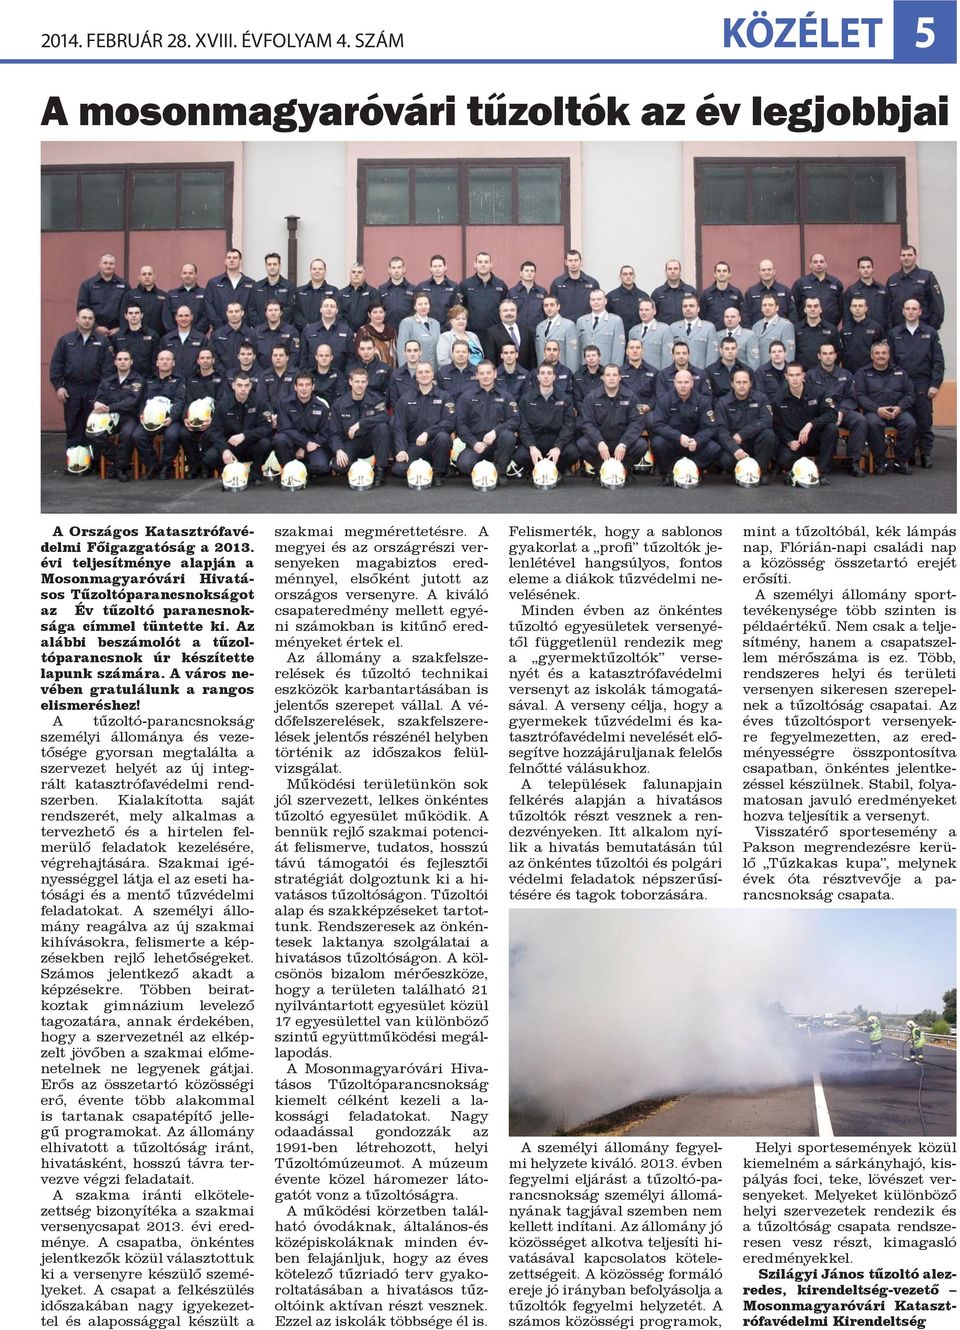 A város nevében gratulálunk a rangos elismeréshez! A tűzoltó-parancsnokság személyi állománya és vezetősége gyorsan megtalálta a szervezet helyét az új integrált katasztrófavédelmi rendszerben.